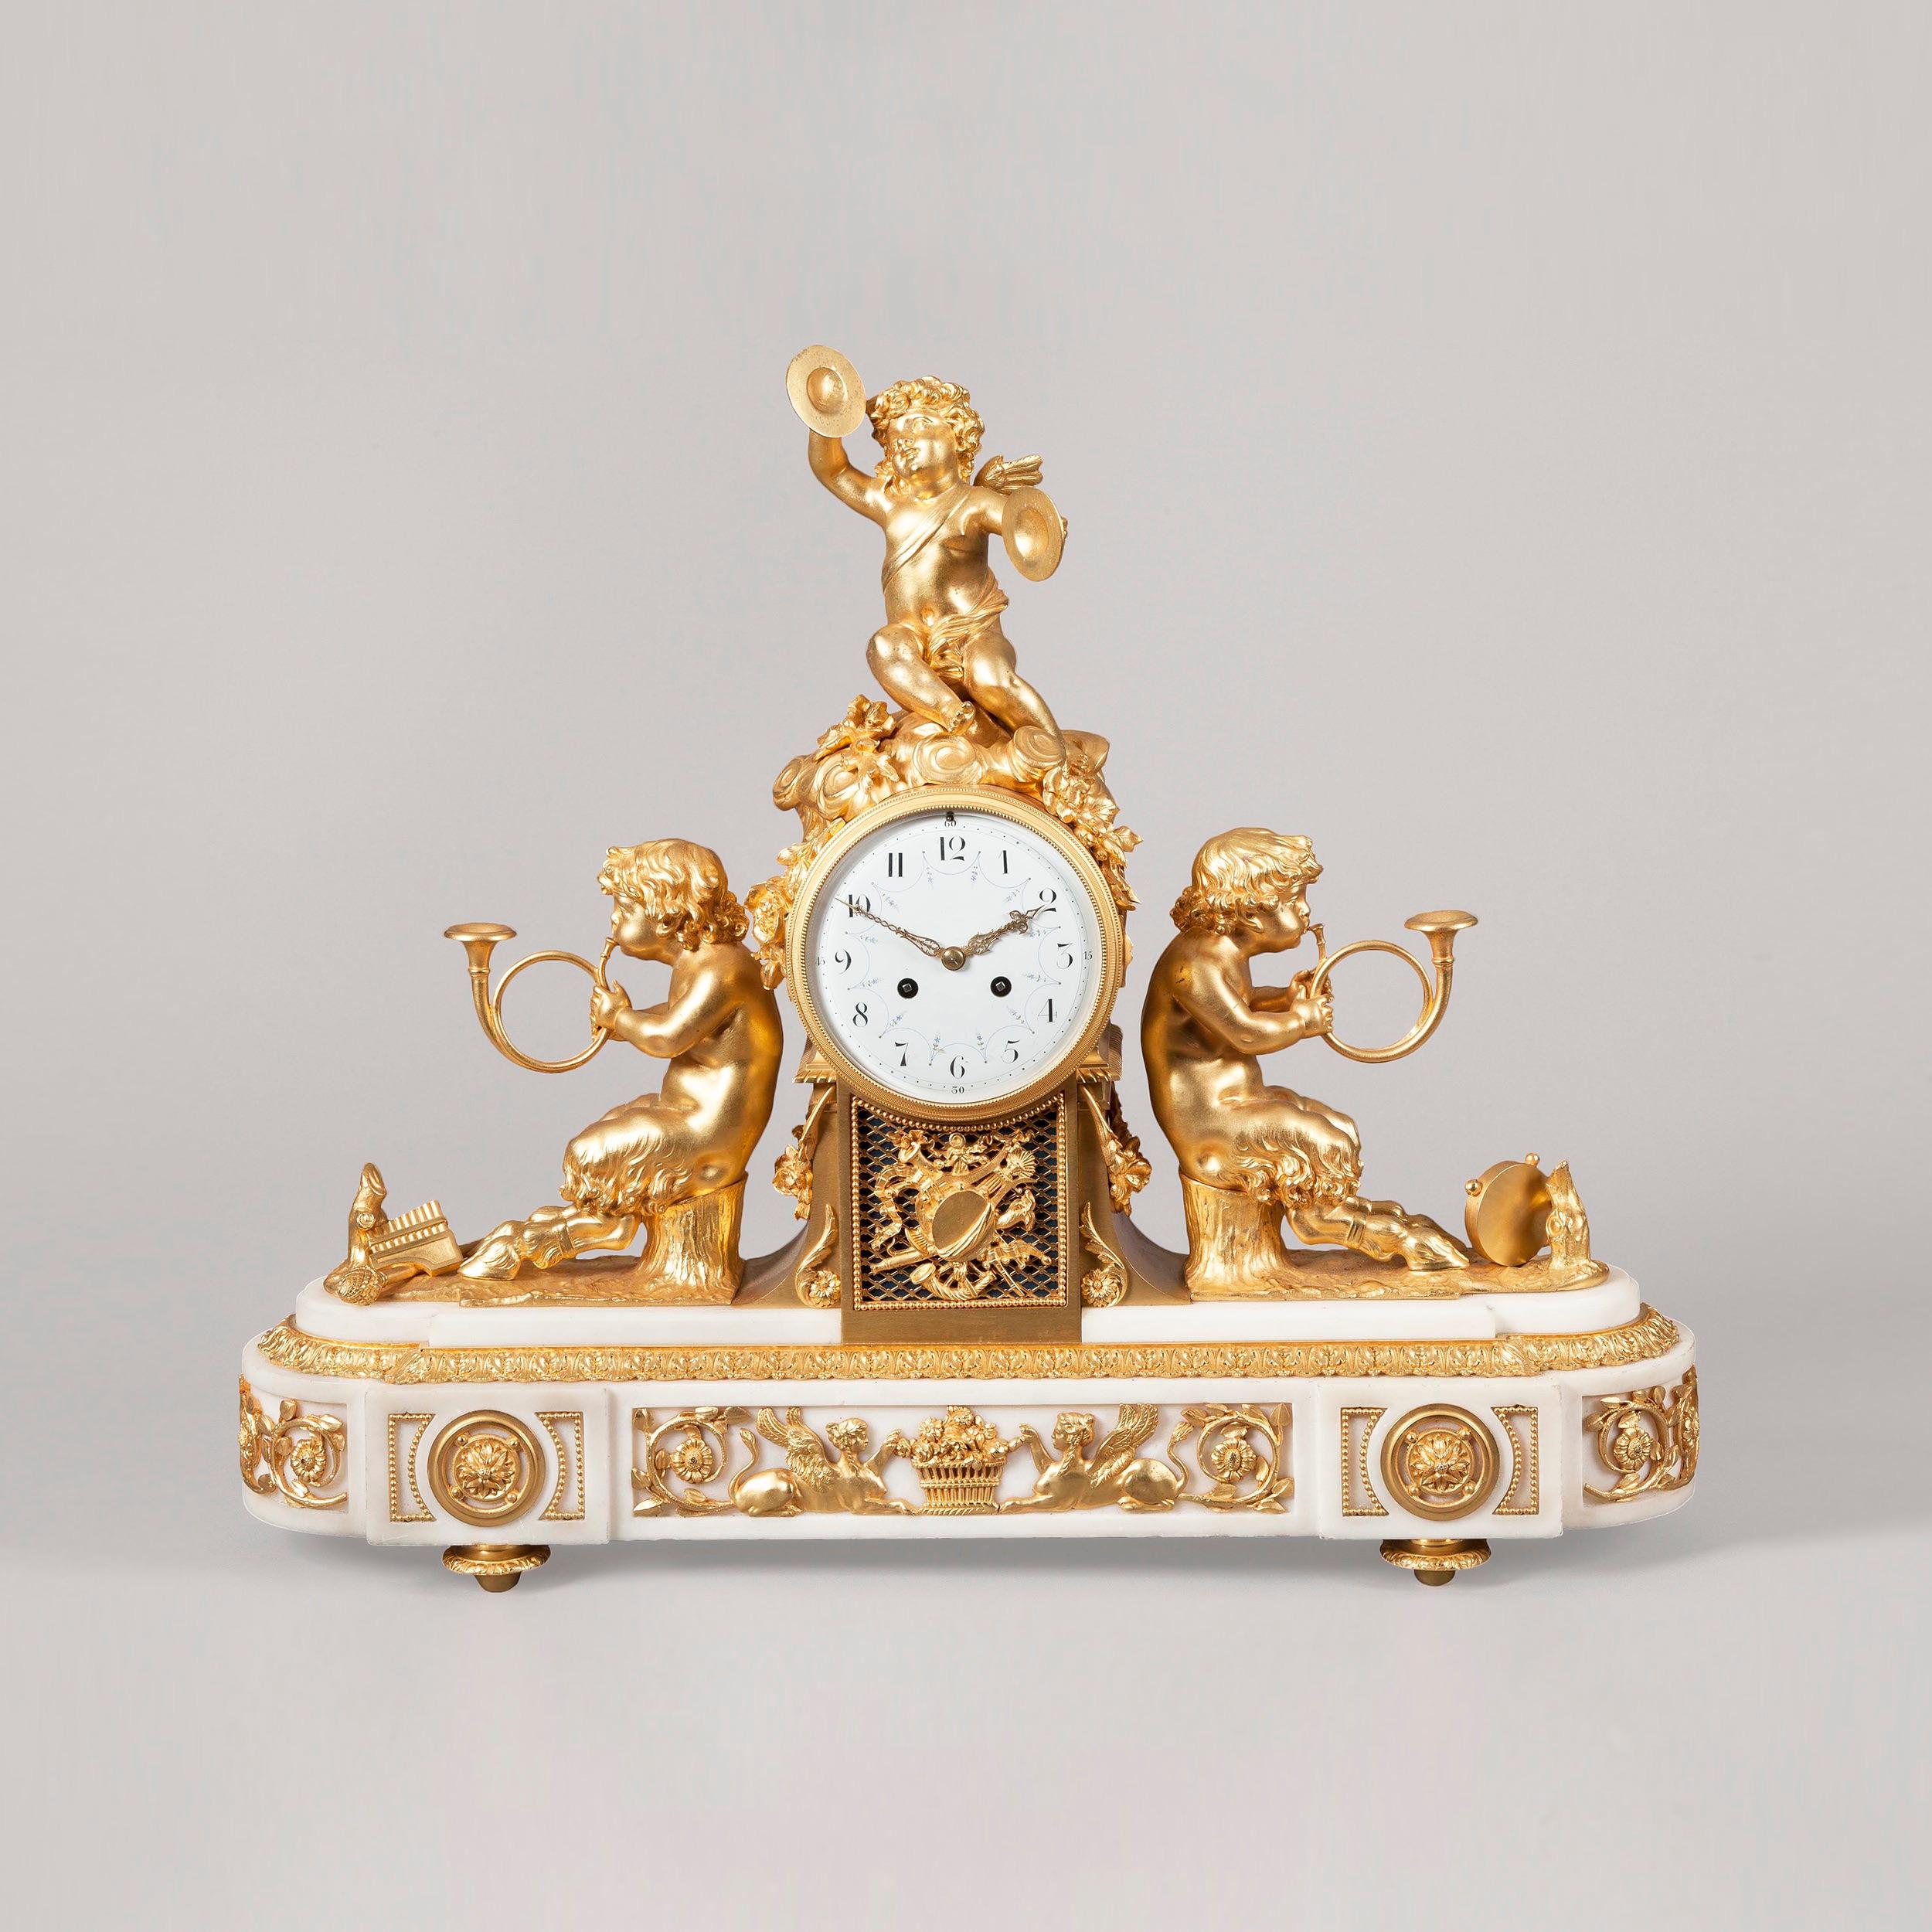 Pendule de cheminée de style Louis XV.

Construite en marbre blanc de Carrare et en bronze doré, la base de forme rectangulaire aux extrémités arquées repose sur des pieds toupies dorés et présente des sphinx dorés opposés ainsi que des montures